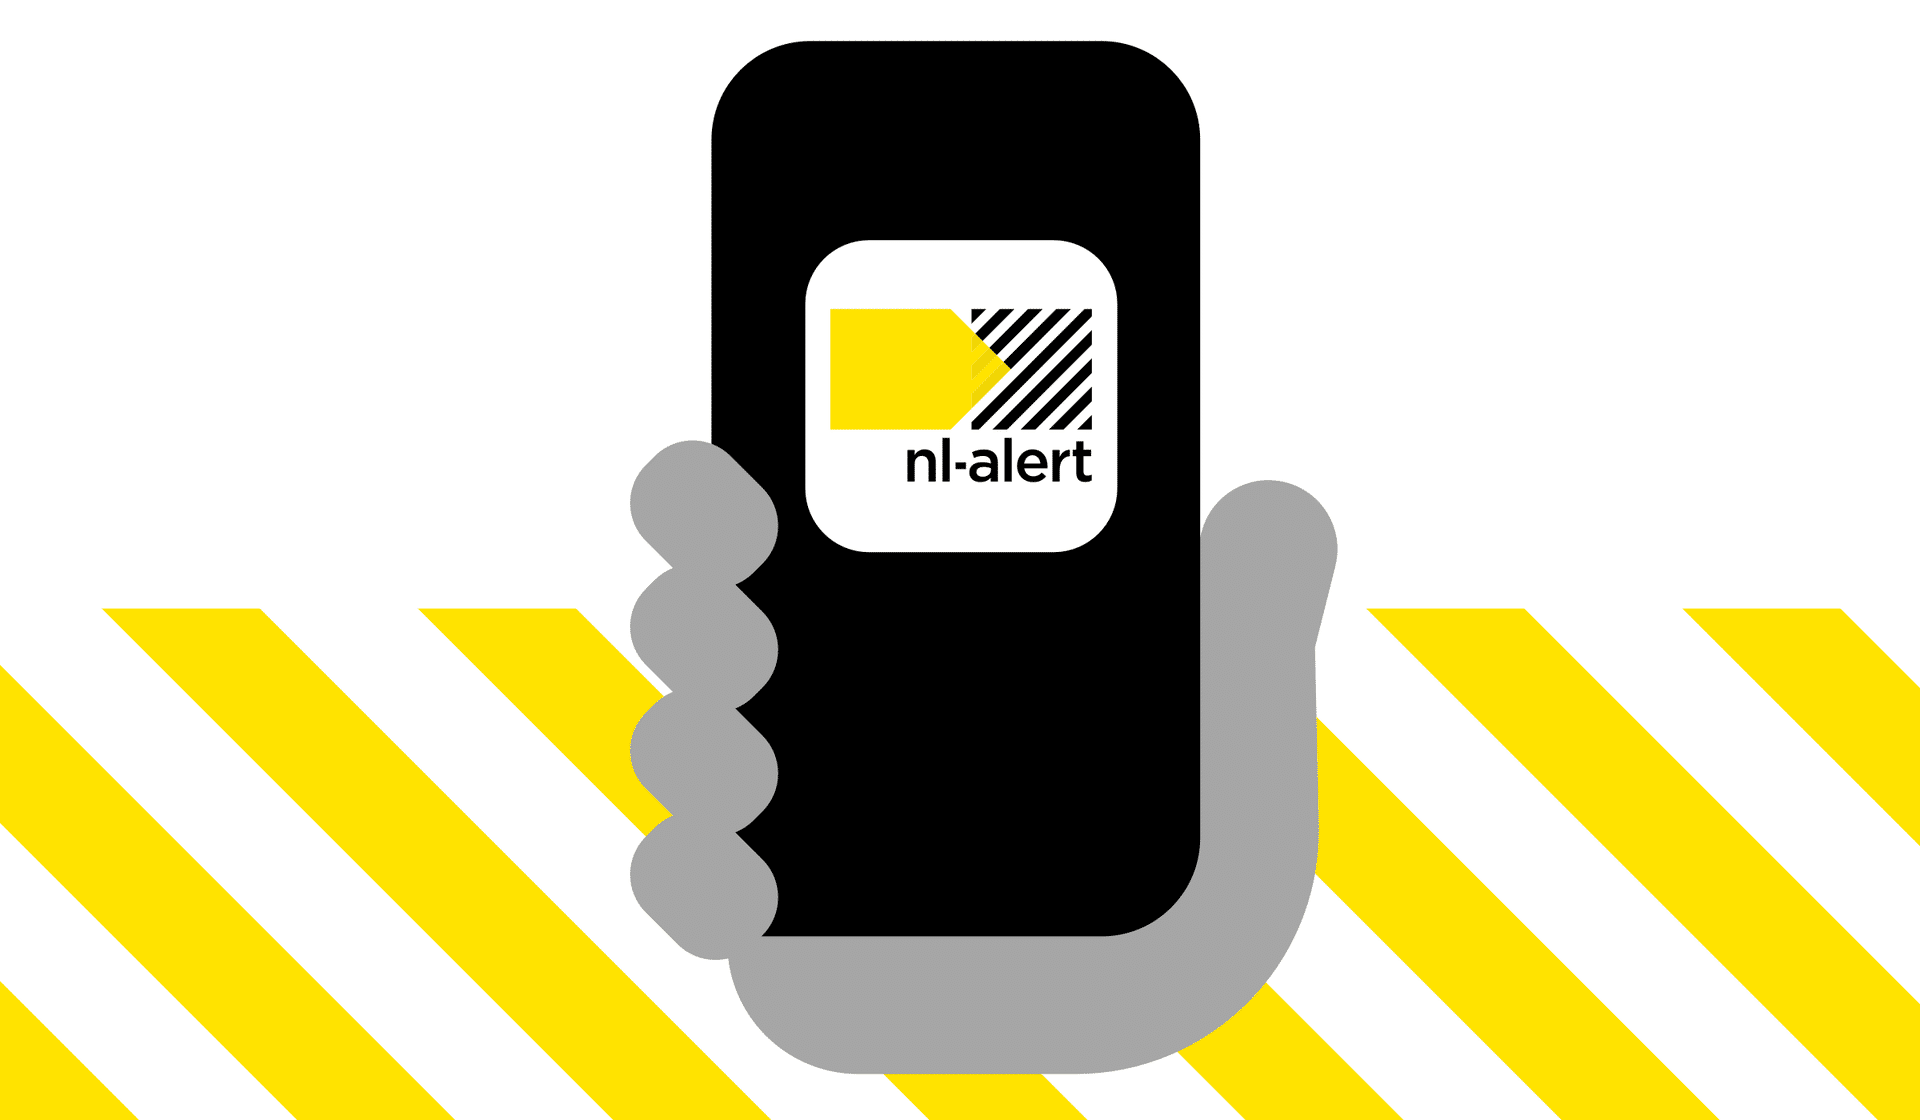 een promotievisual van de nl-alert app van een handje die een smartphone vasthoudt